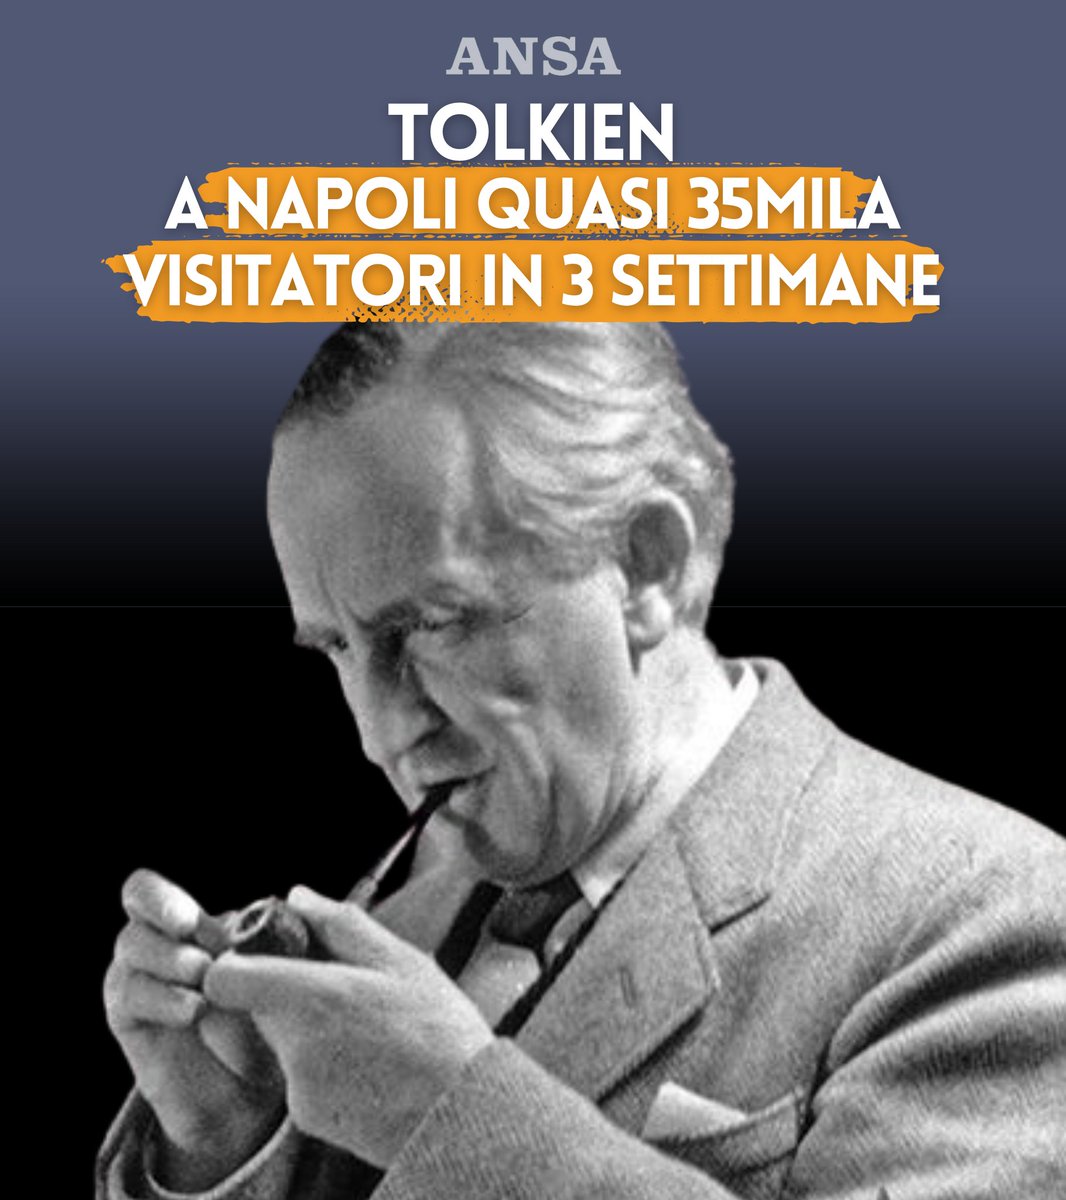 Tolkien, a Napoli quasi 35mila visitatori in 3 settimane. Su @Agenzia_Ansa